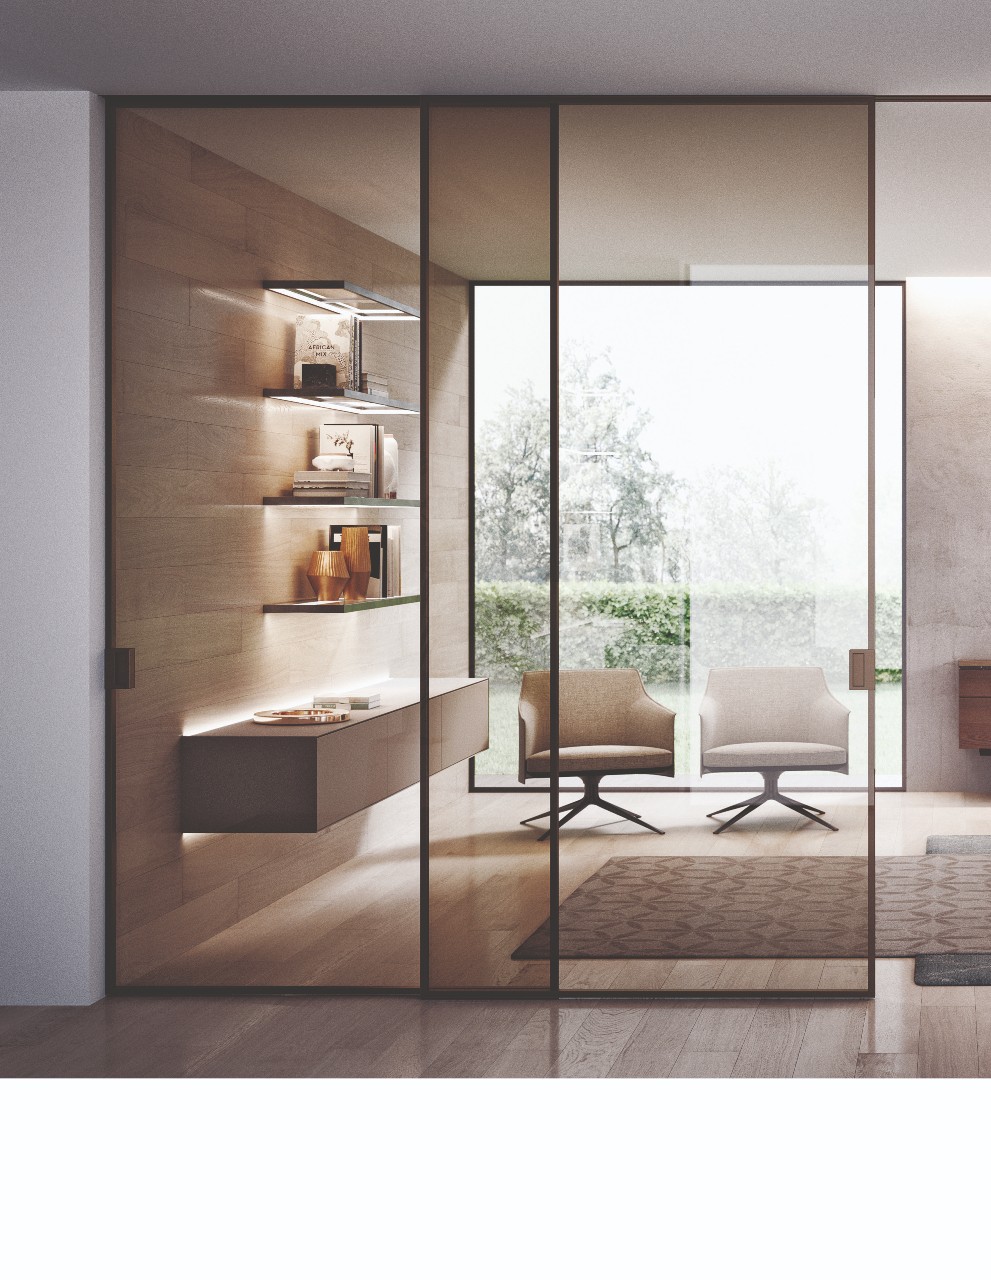 Porte interne Monza e brianza di design per la casa